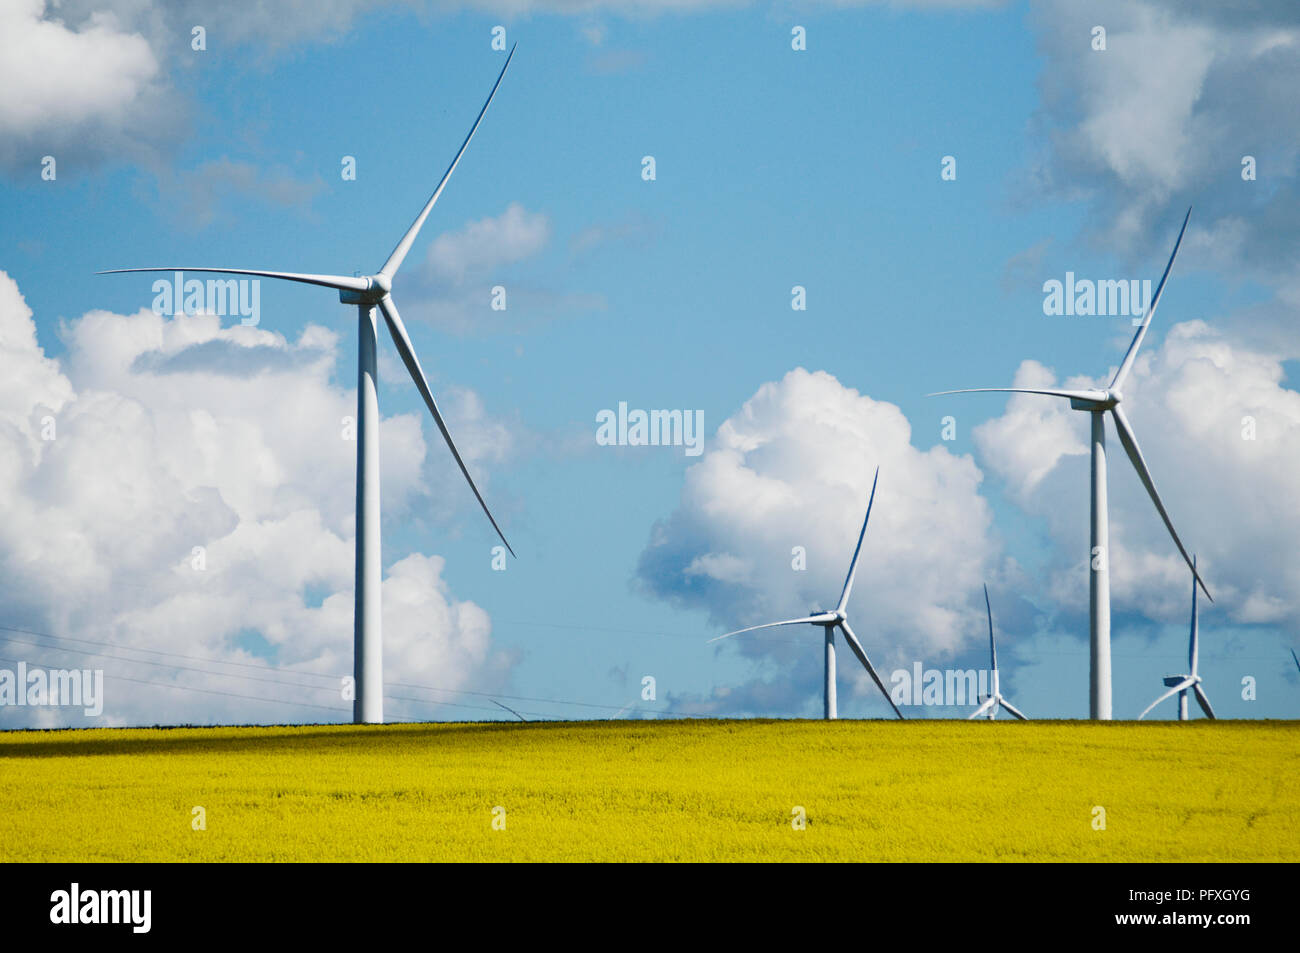 Les bestiaux Hill Wind Farm est un projet d'énergie éolienne situé à 35 km à l'ouest de la région de Ballarat Victoria's Central Highlands, connu comme les Pyrénées, l'Australie Banque D'Images